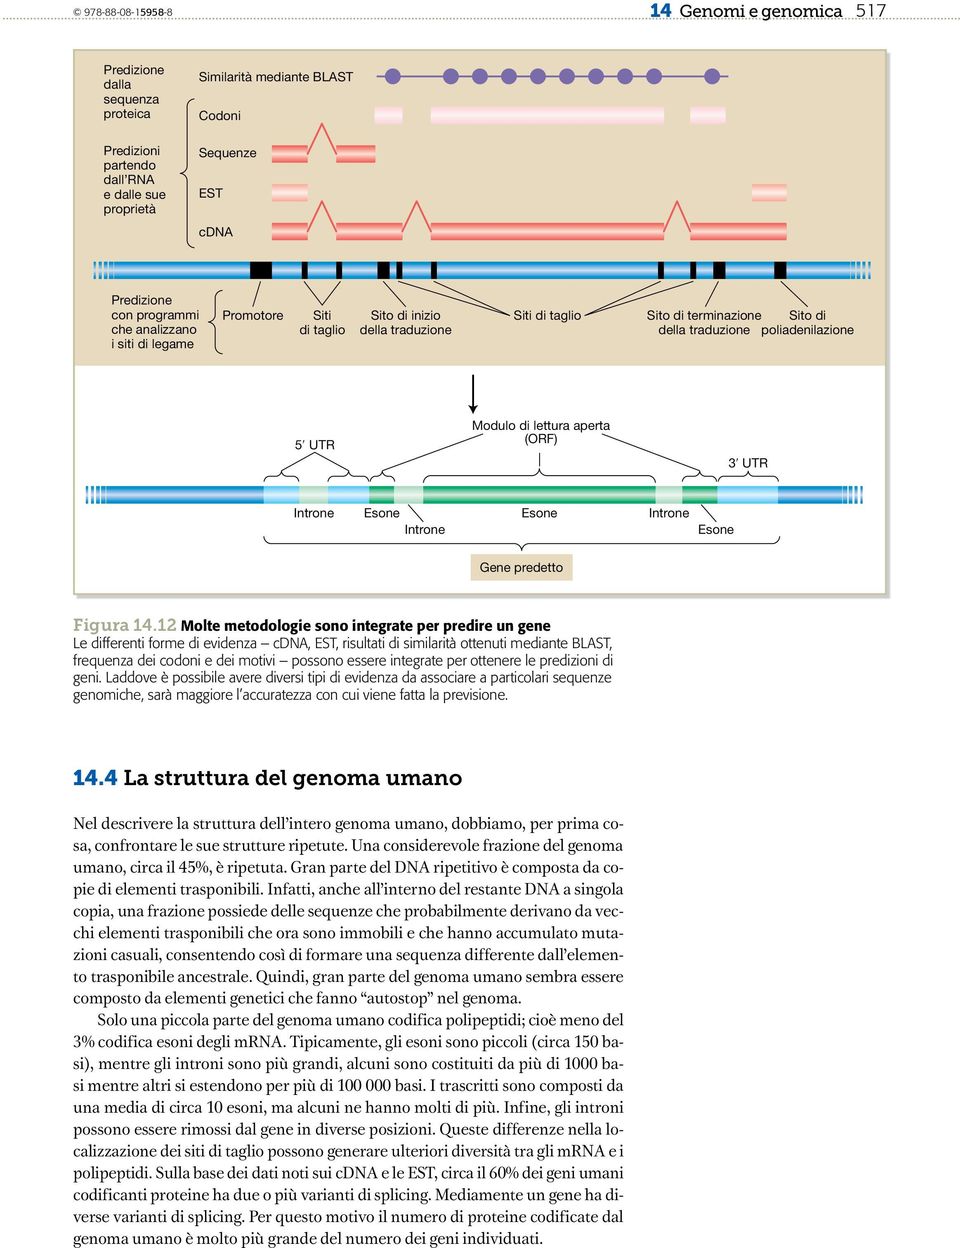 lettura aperta (ORF) 3ʹ UTR Introne Esone Introne Esone Introne Esone Gene predetto Figura 14.